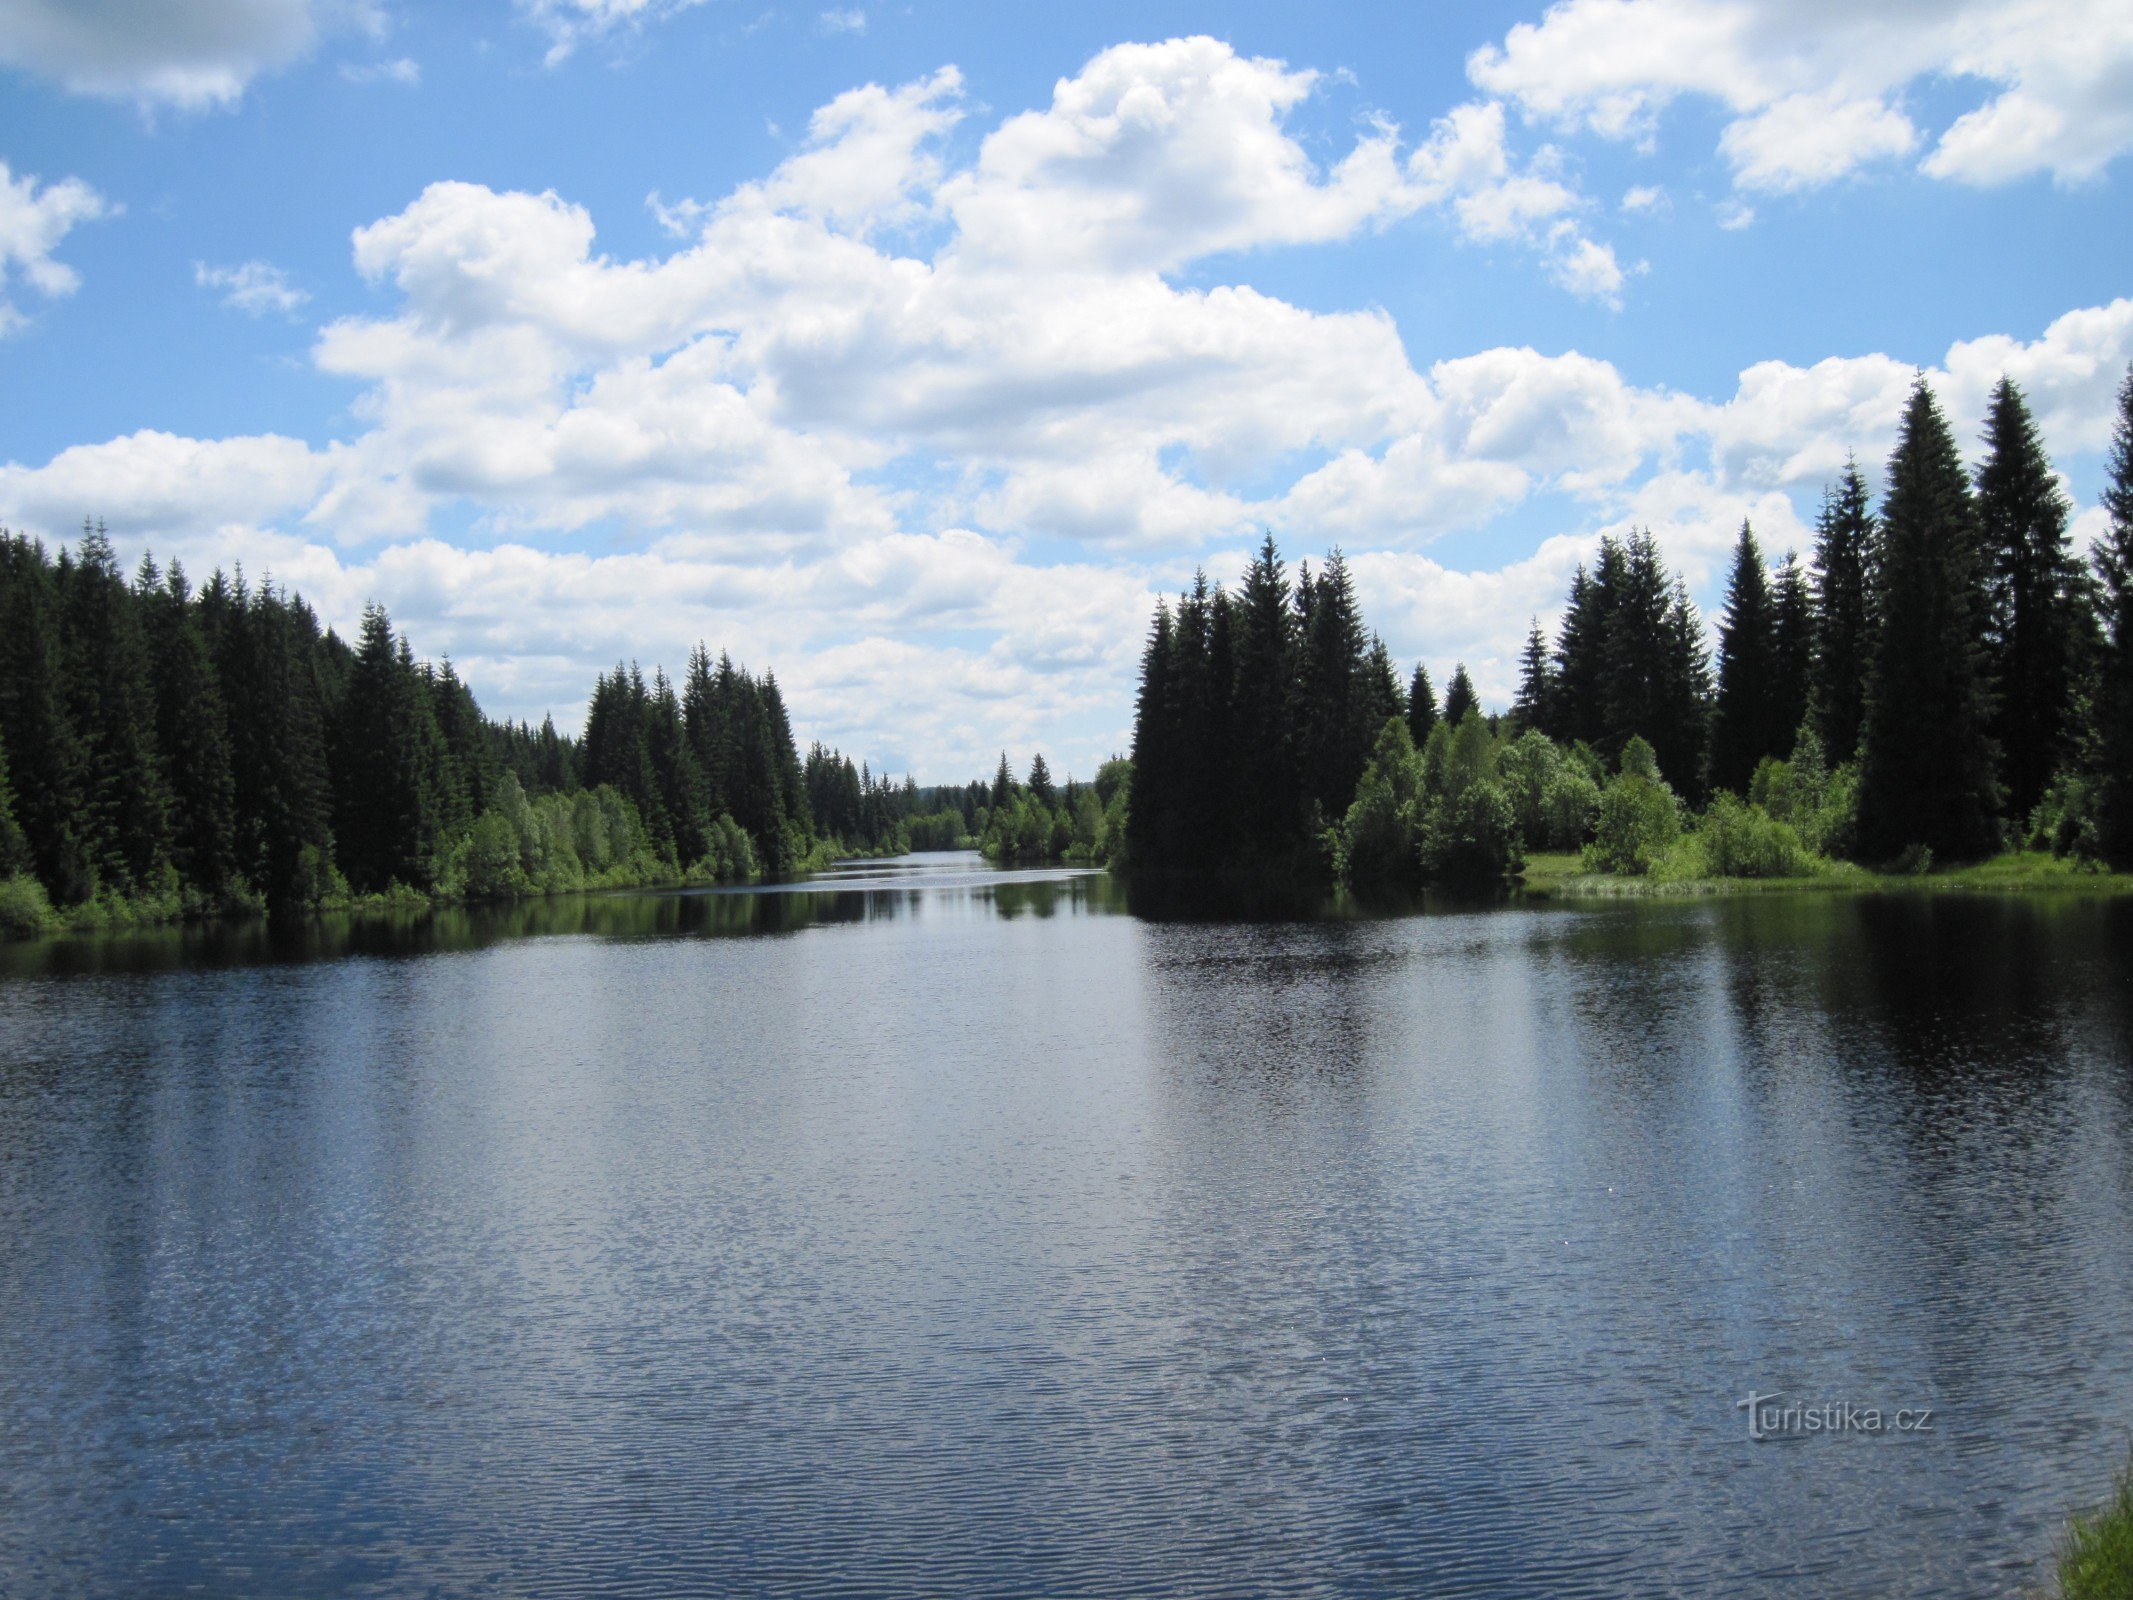 Jiřická reservoir - Pohorský rybník